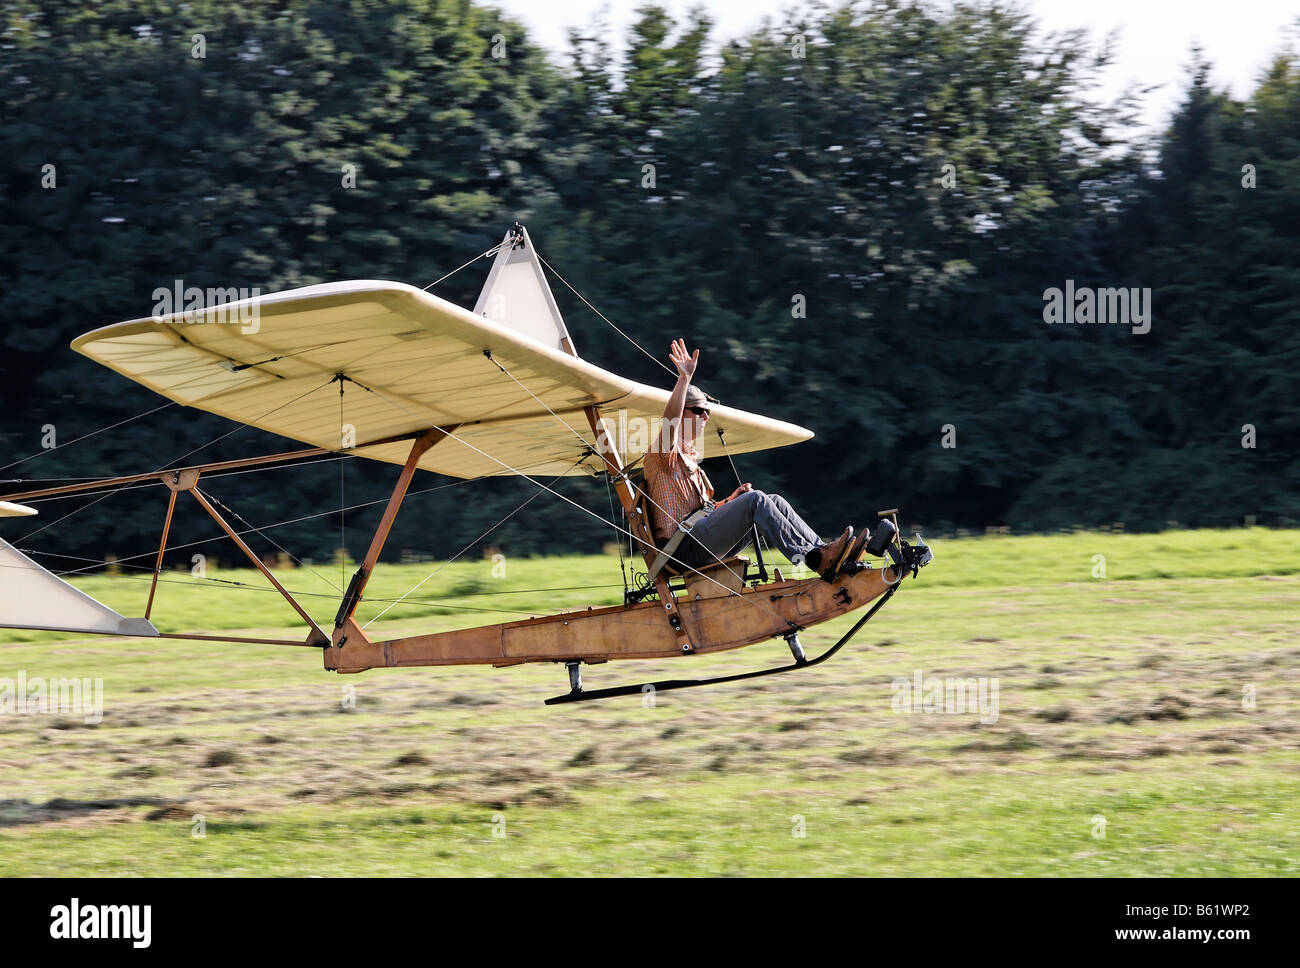 El histórico aterrizaje piloto planeador SG38 en un campo y saludando a un público, construcción de madera con un asiento abierto, planeador a t Foto de stock